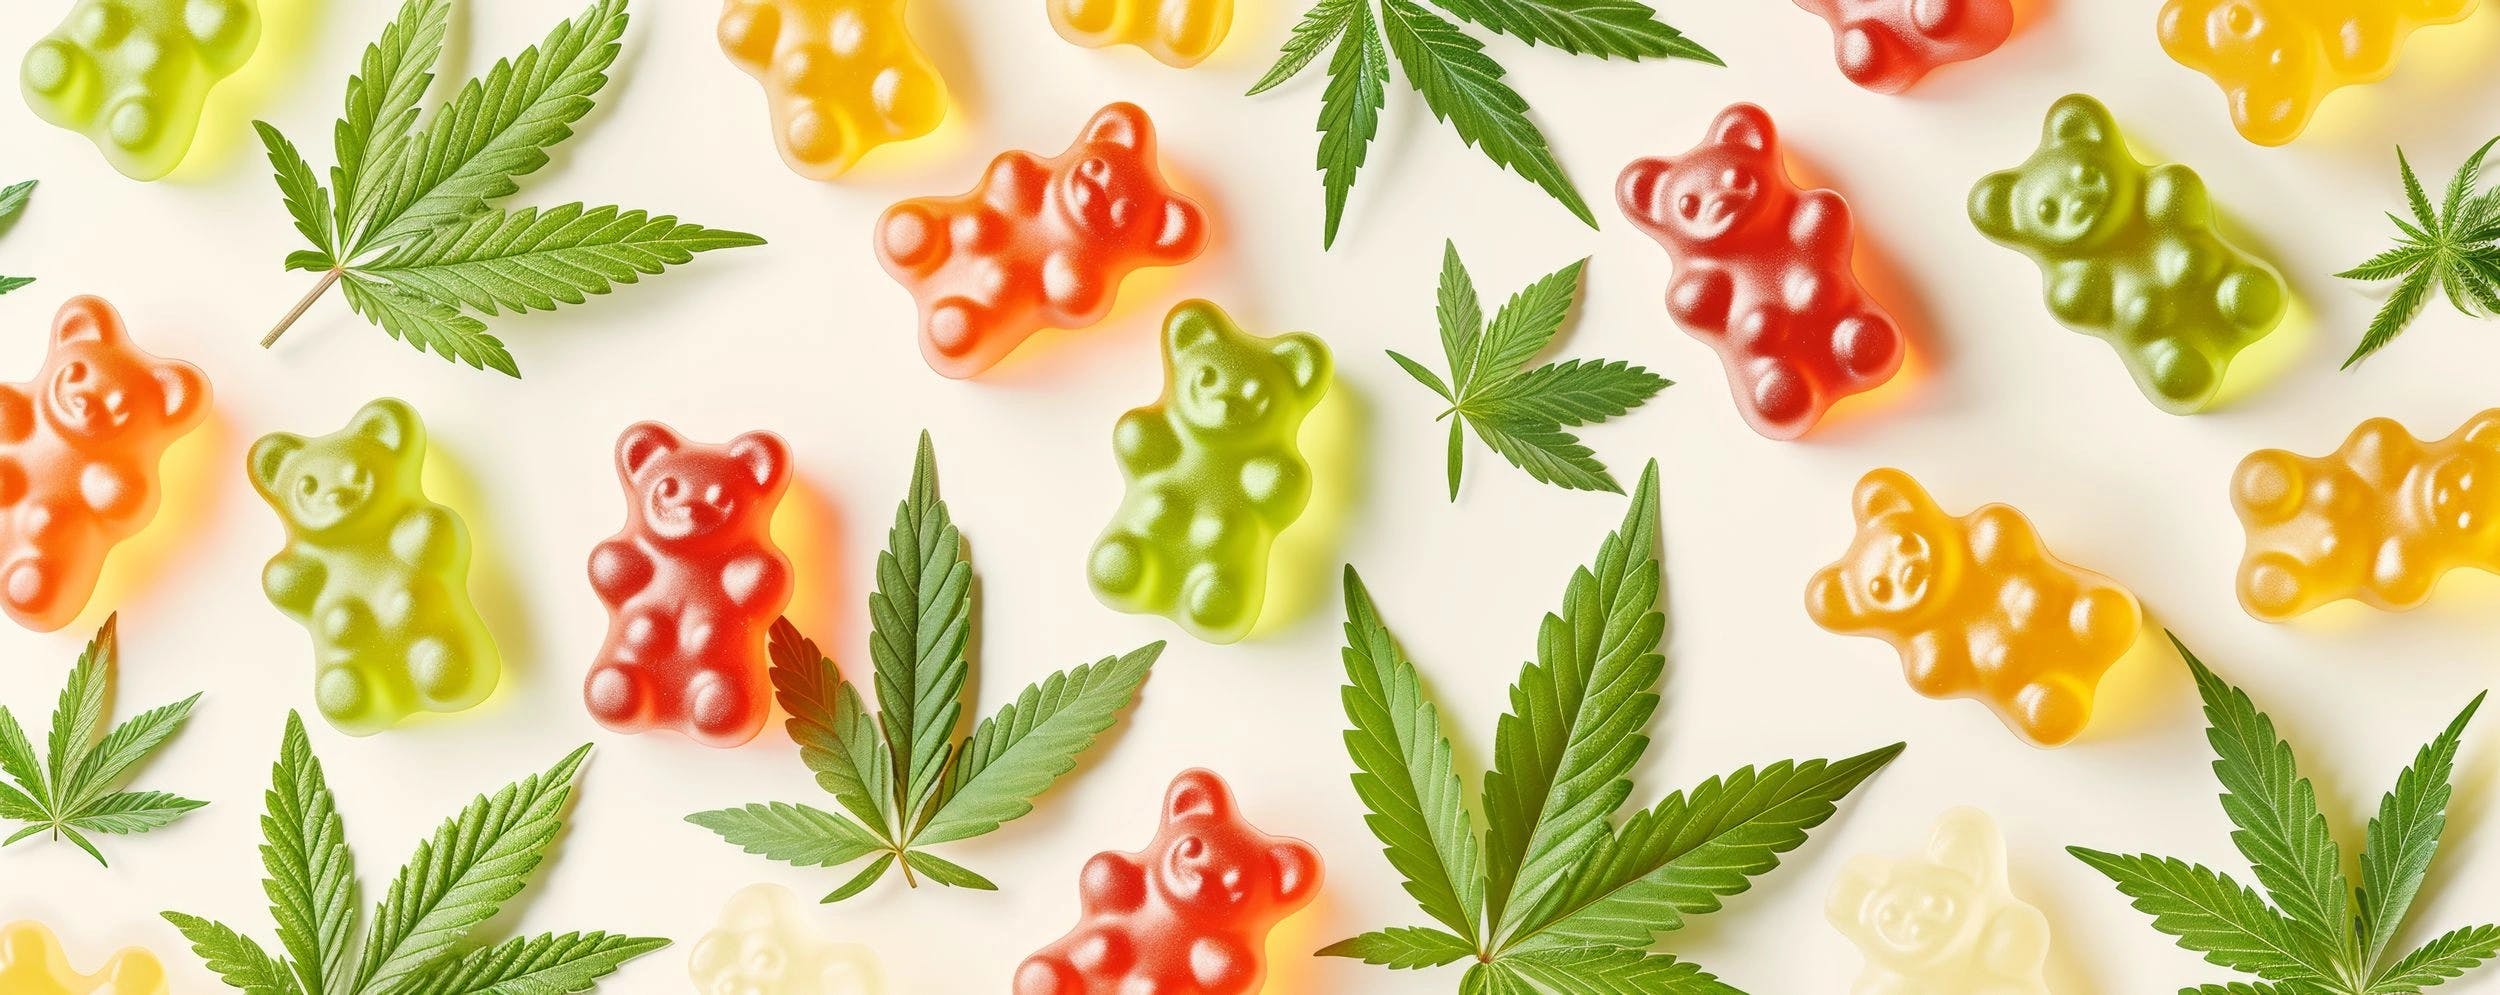 Cannabinoid-Analytik: „Gummi-Bärchen sind nicht ohne“